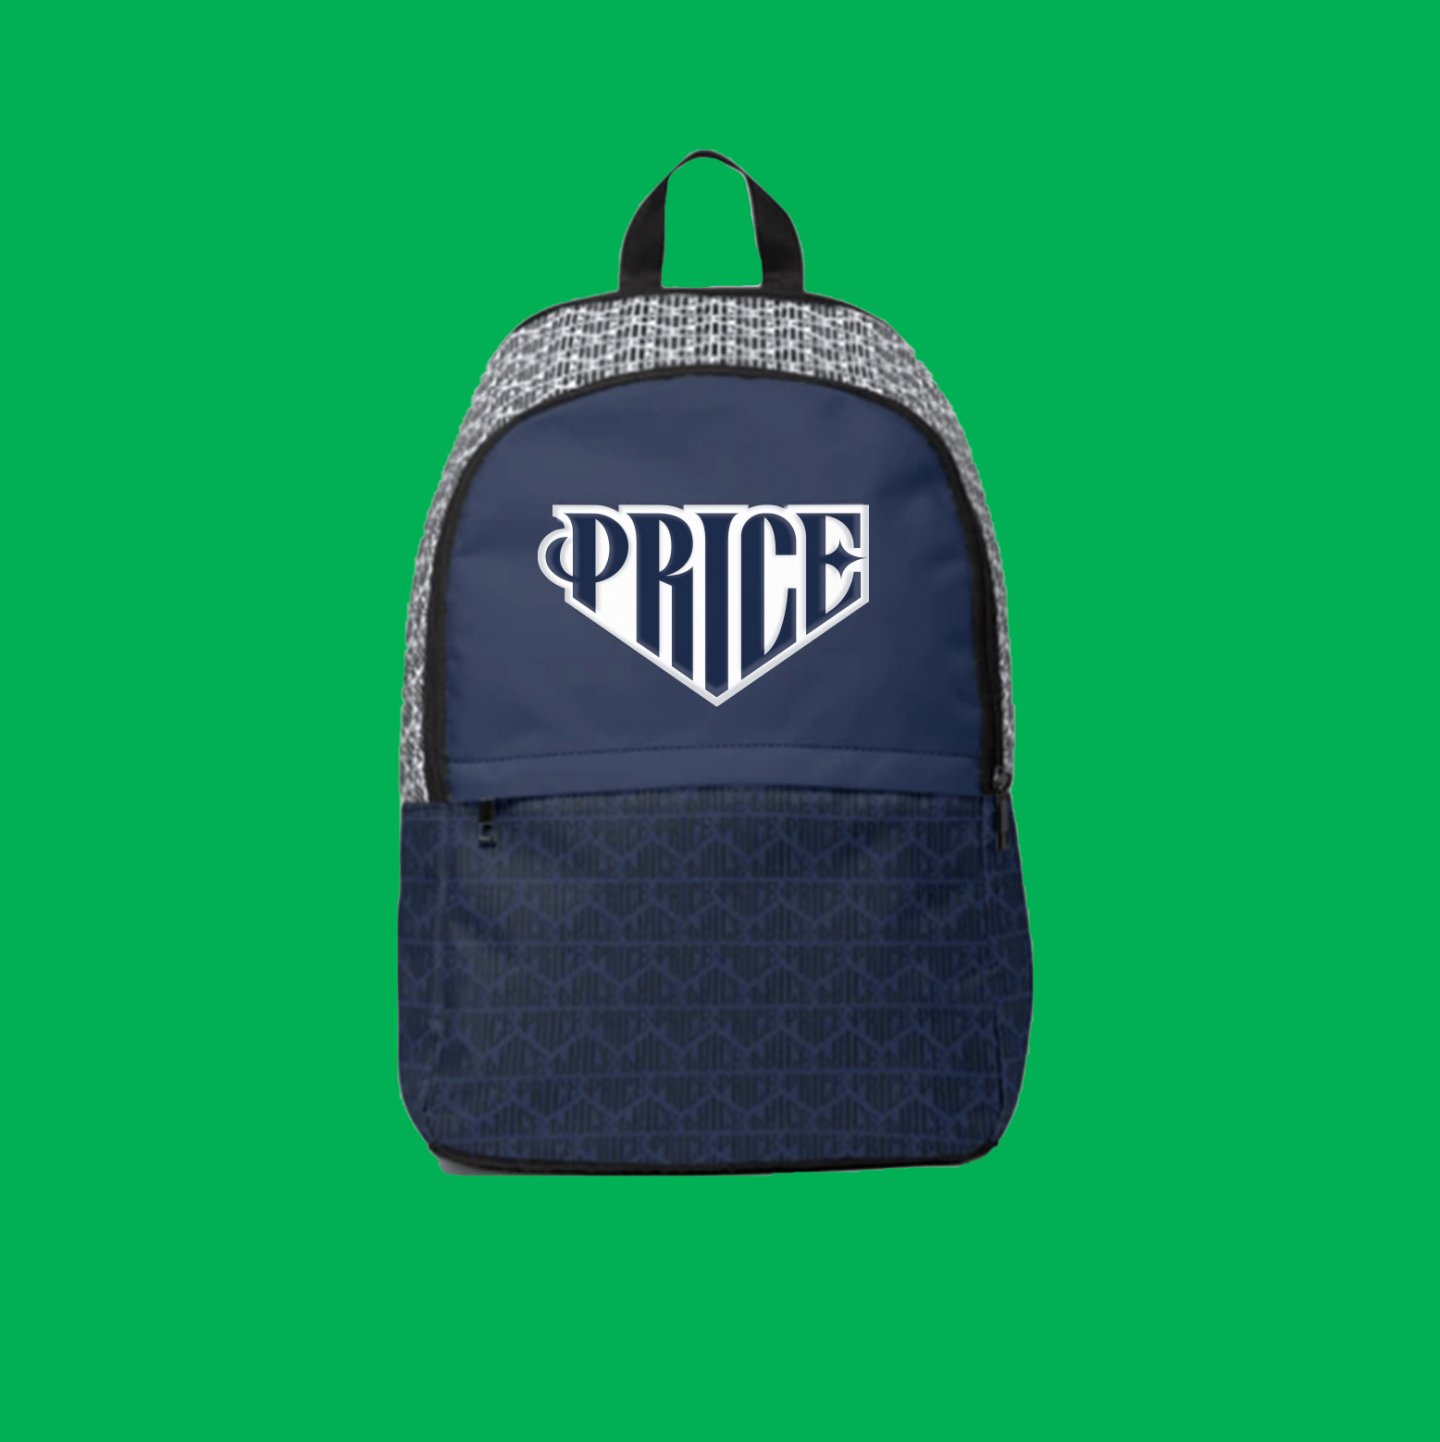 Price logo backpack mockup